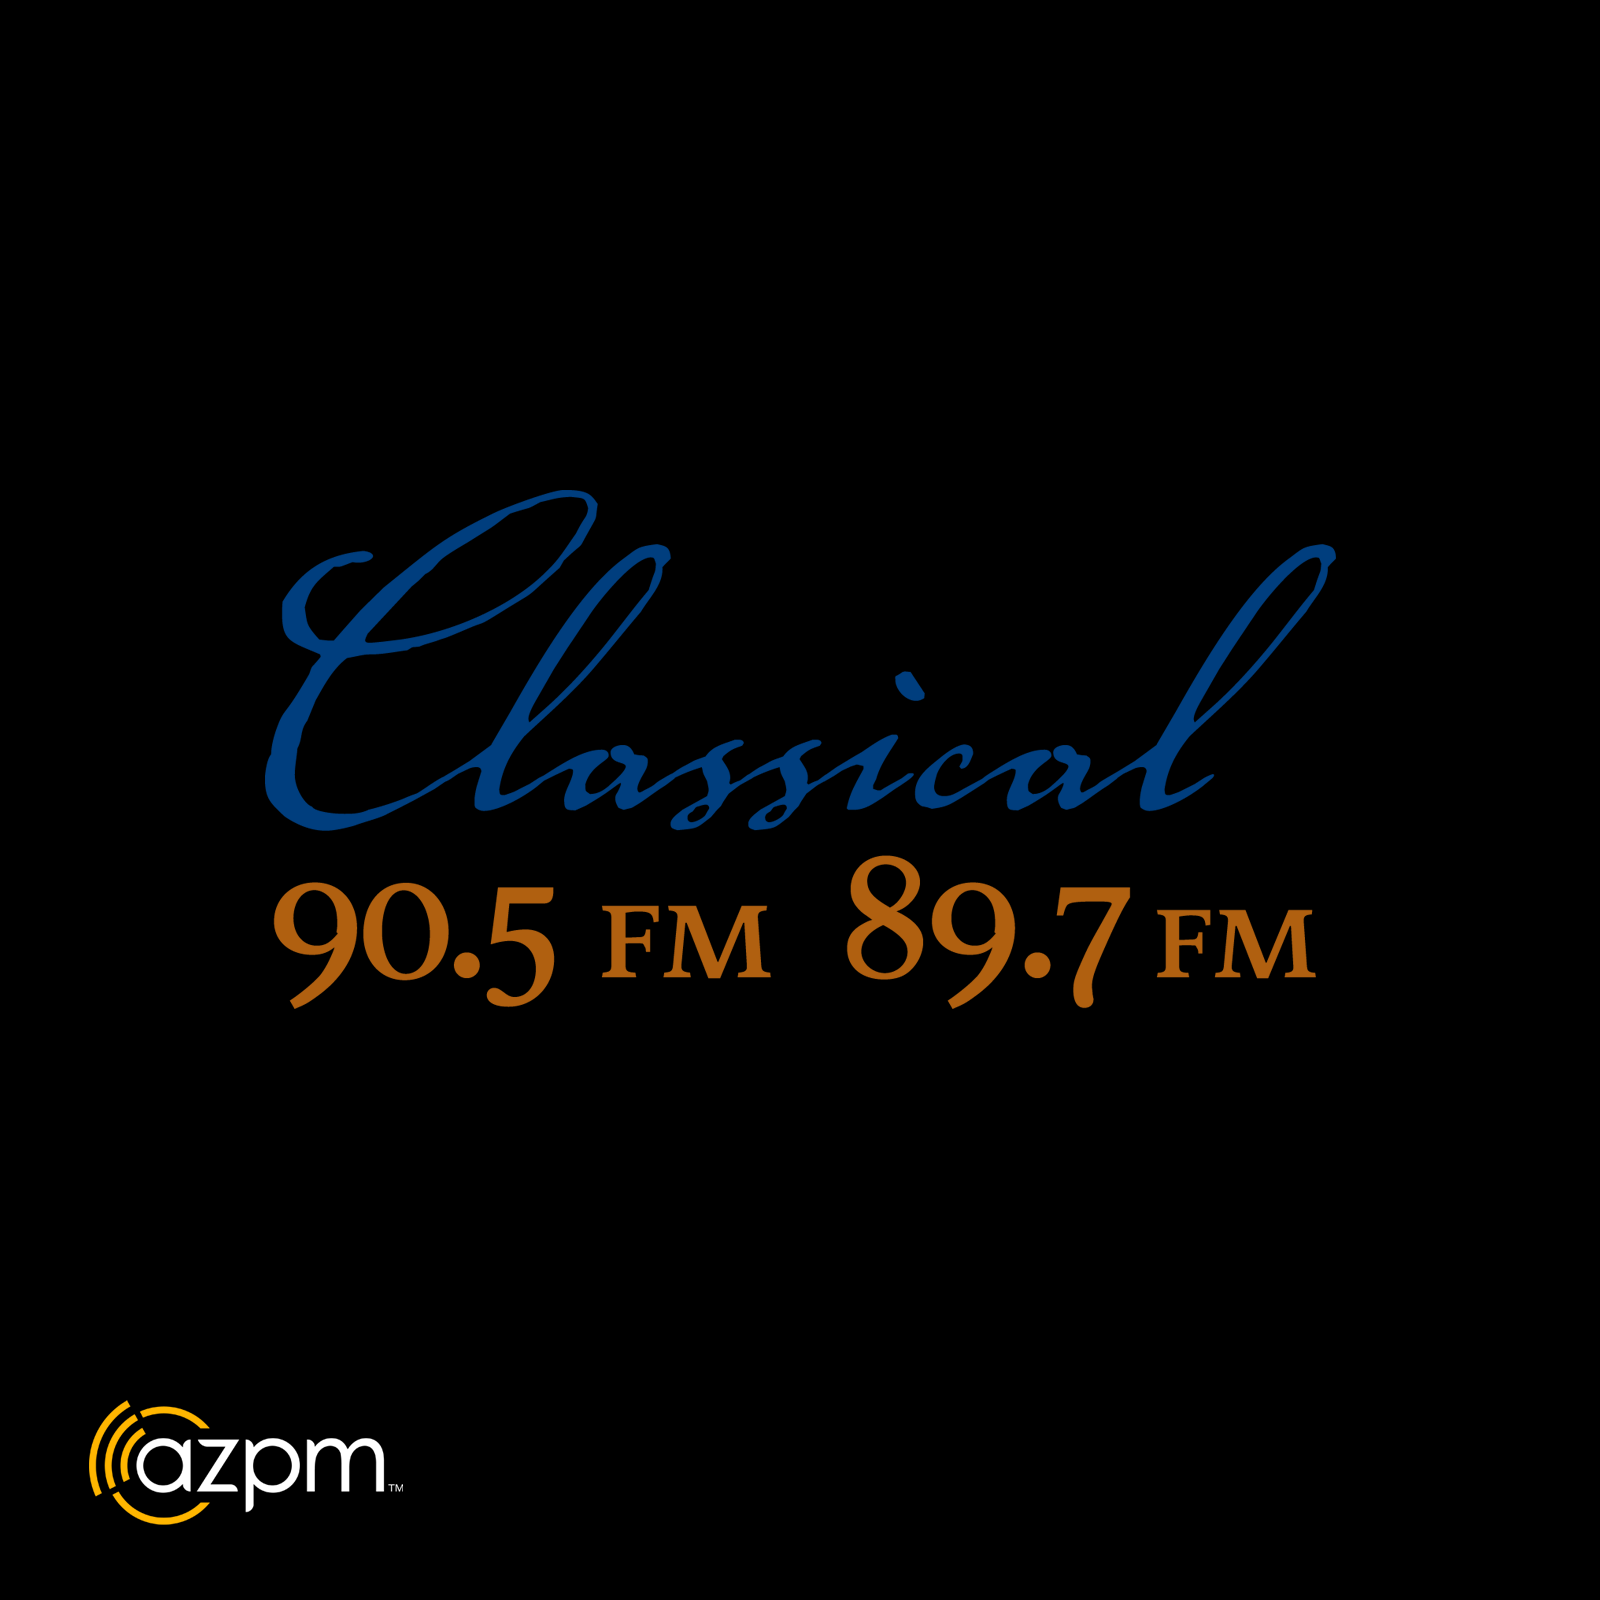 Classical 90.5